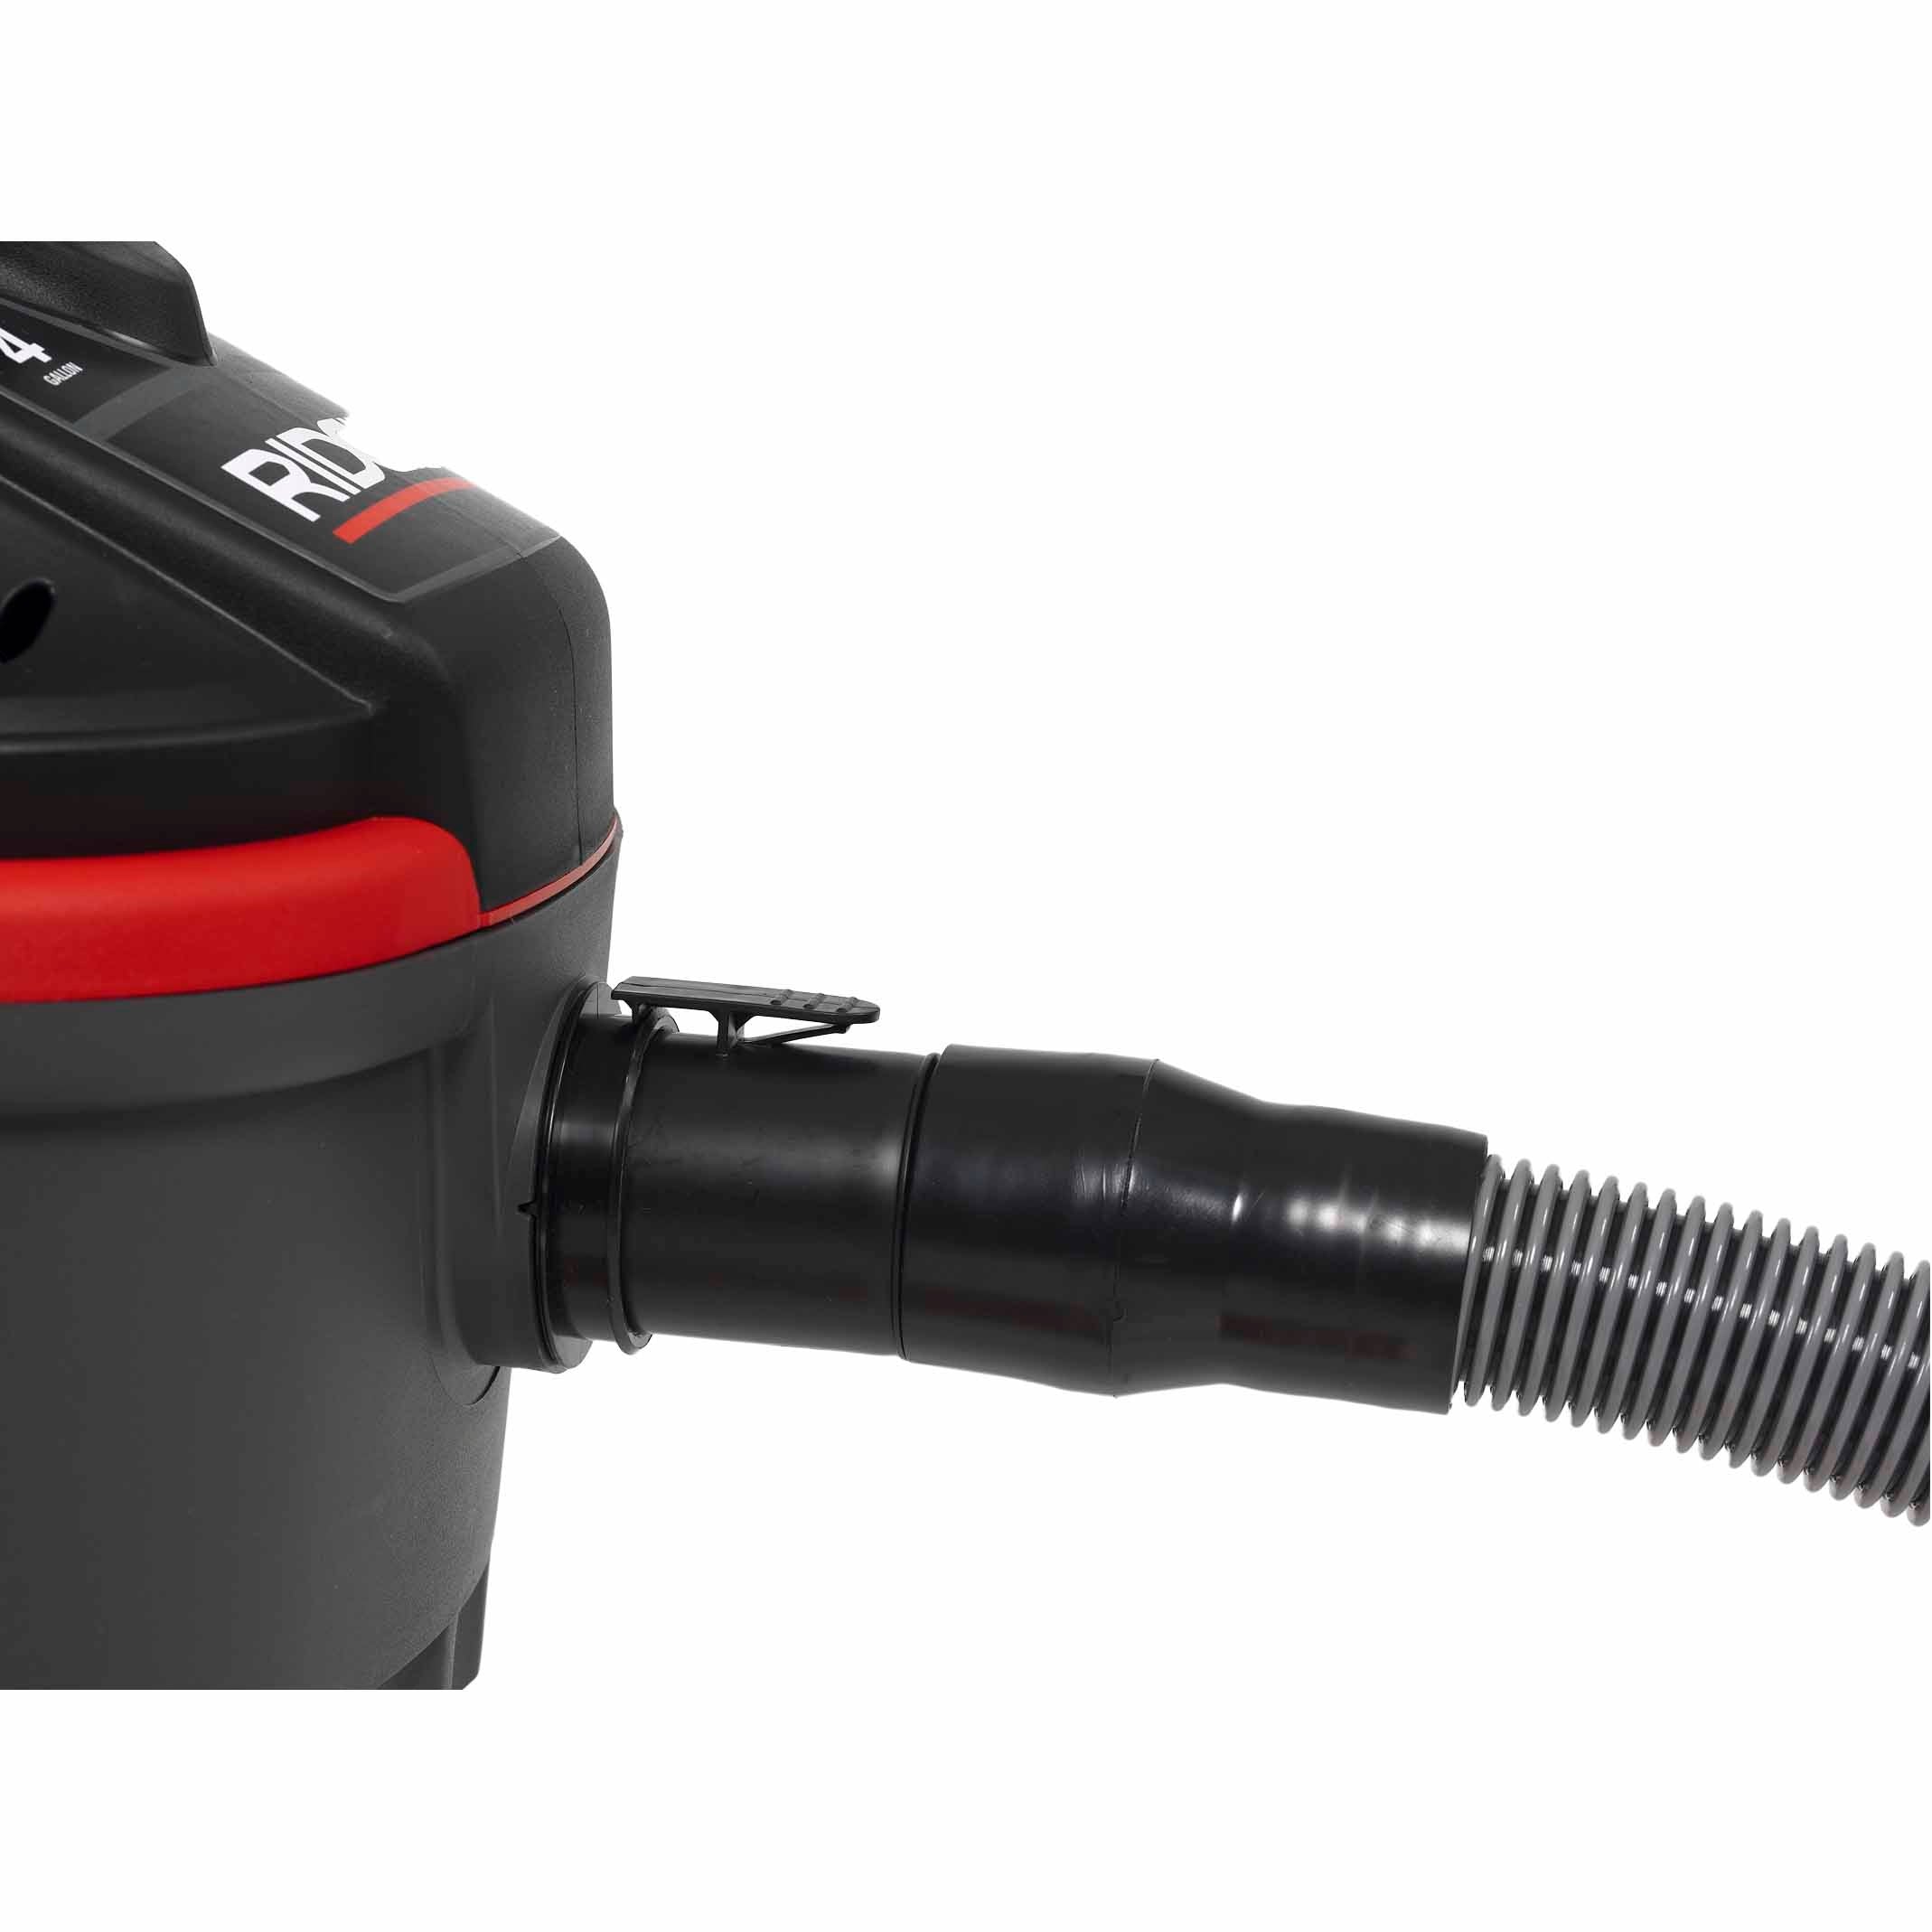 RIDGID 50313 4000RV 4 Gal Portable Red Wet/Dry Vacuum